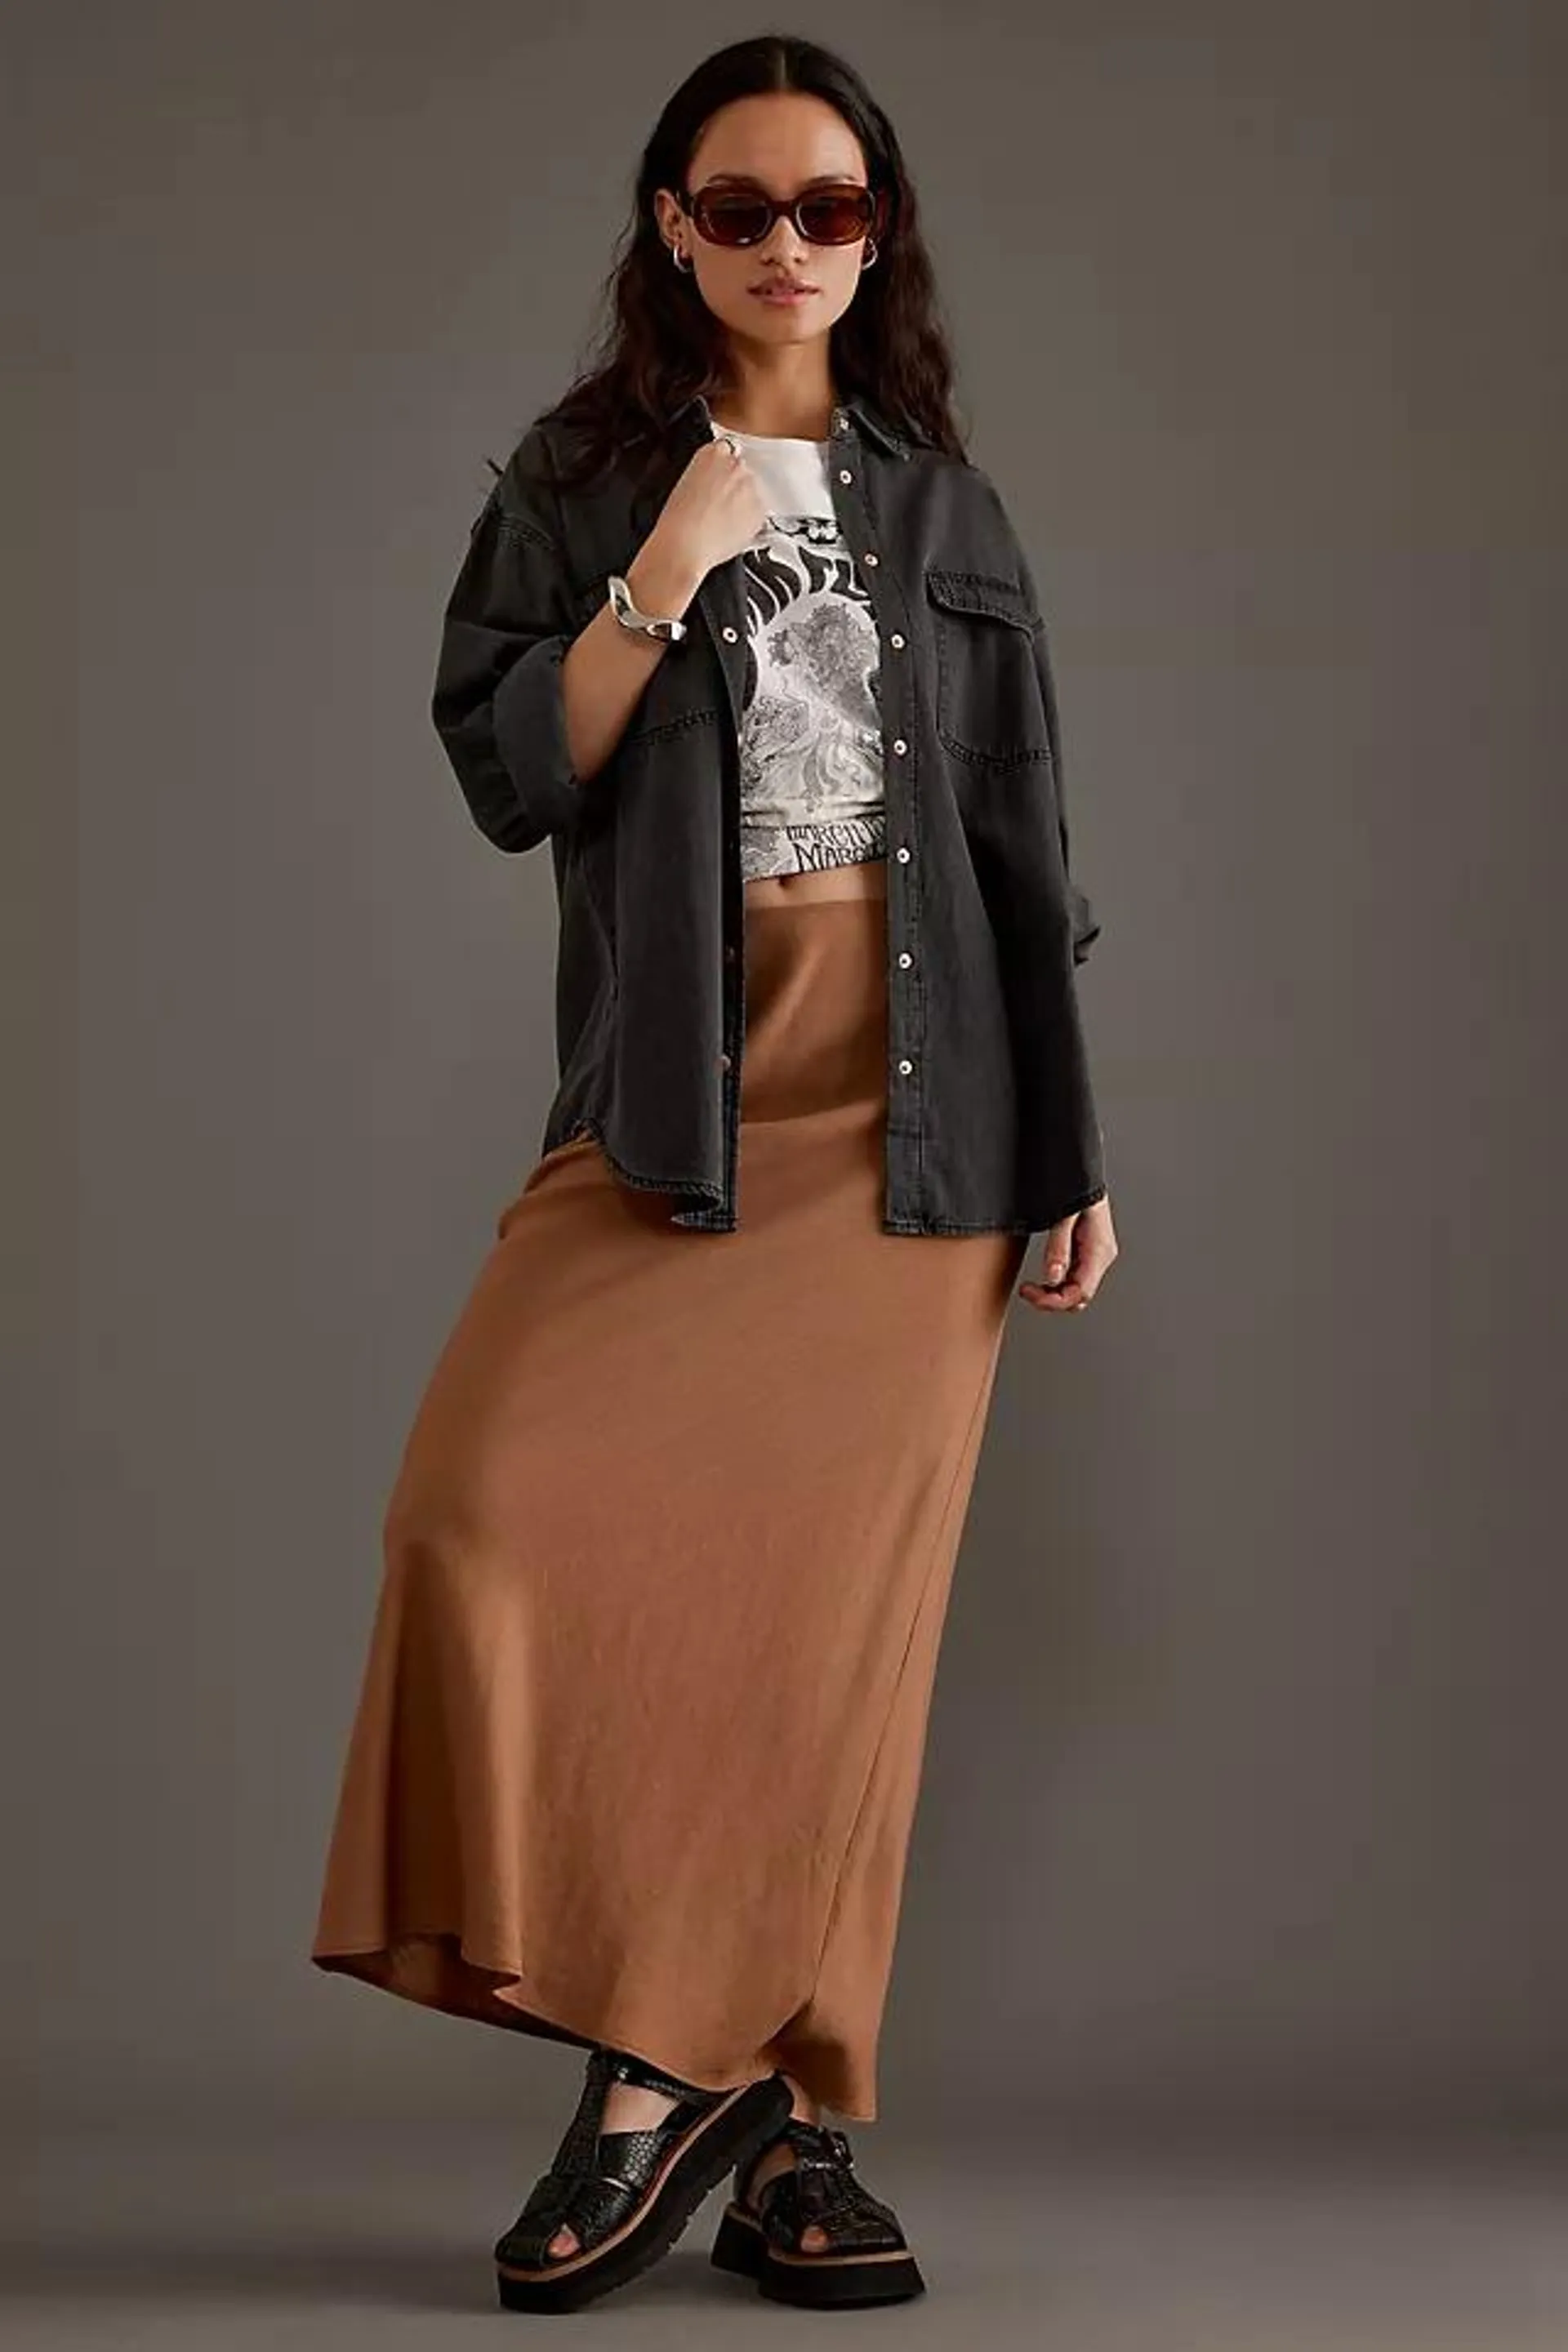 Linen-Blend Bias Maxi Skirt